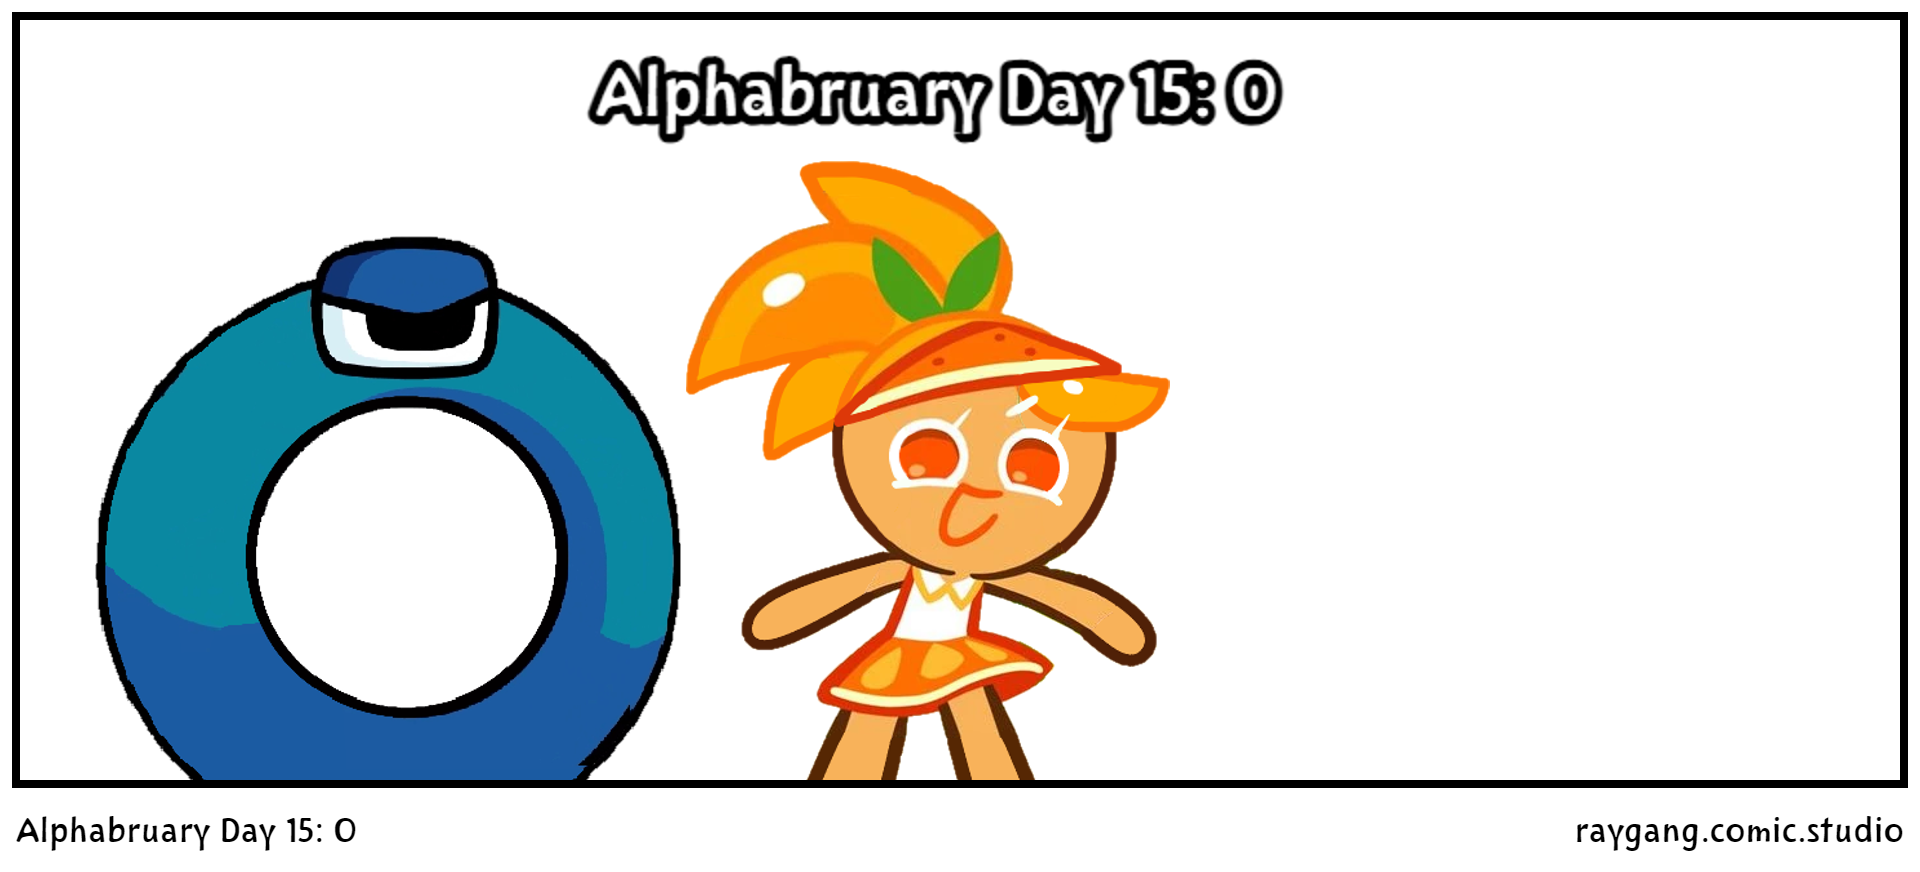 Alphabruary Day 15: O